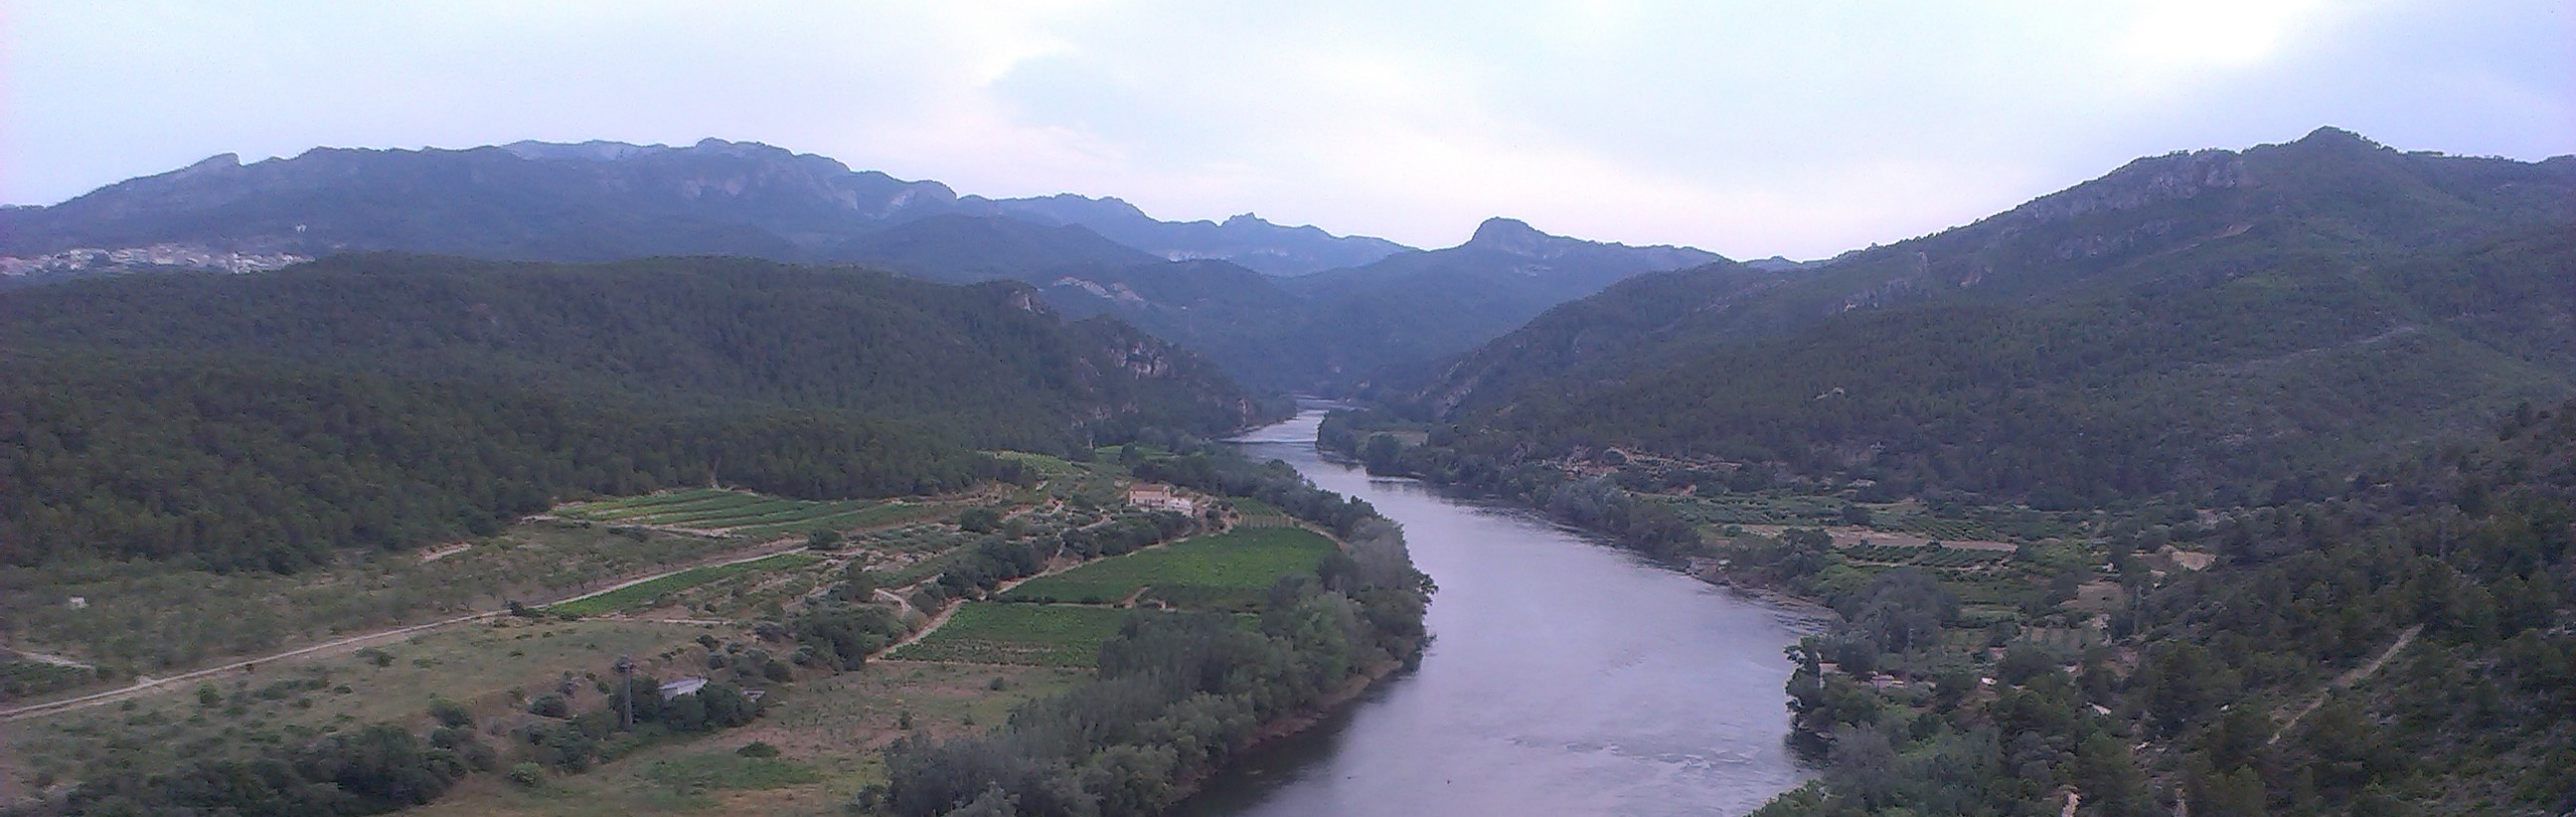 La Confederación Hidrográfica del Ebro